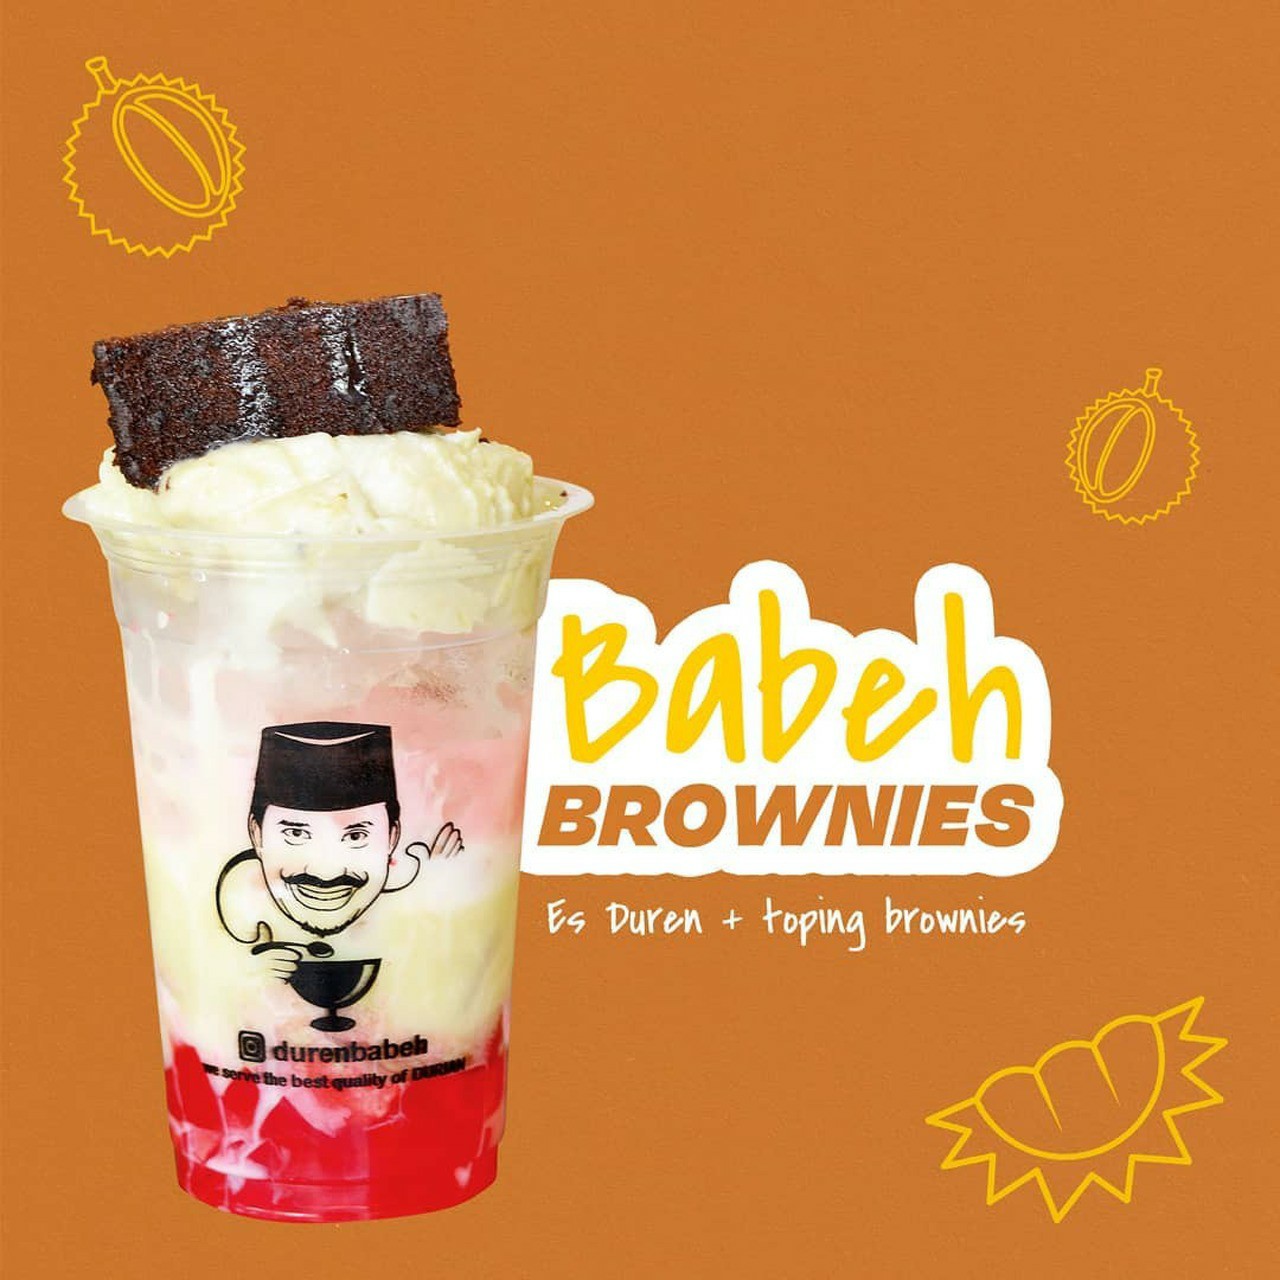 Babeh Brownies